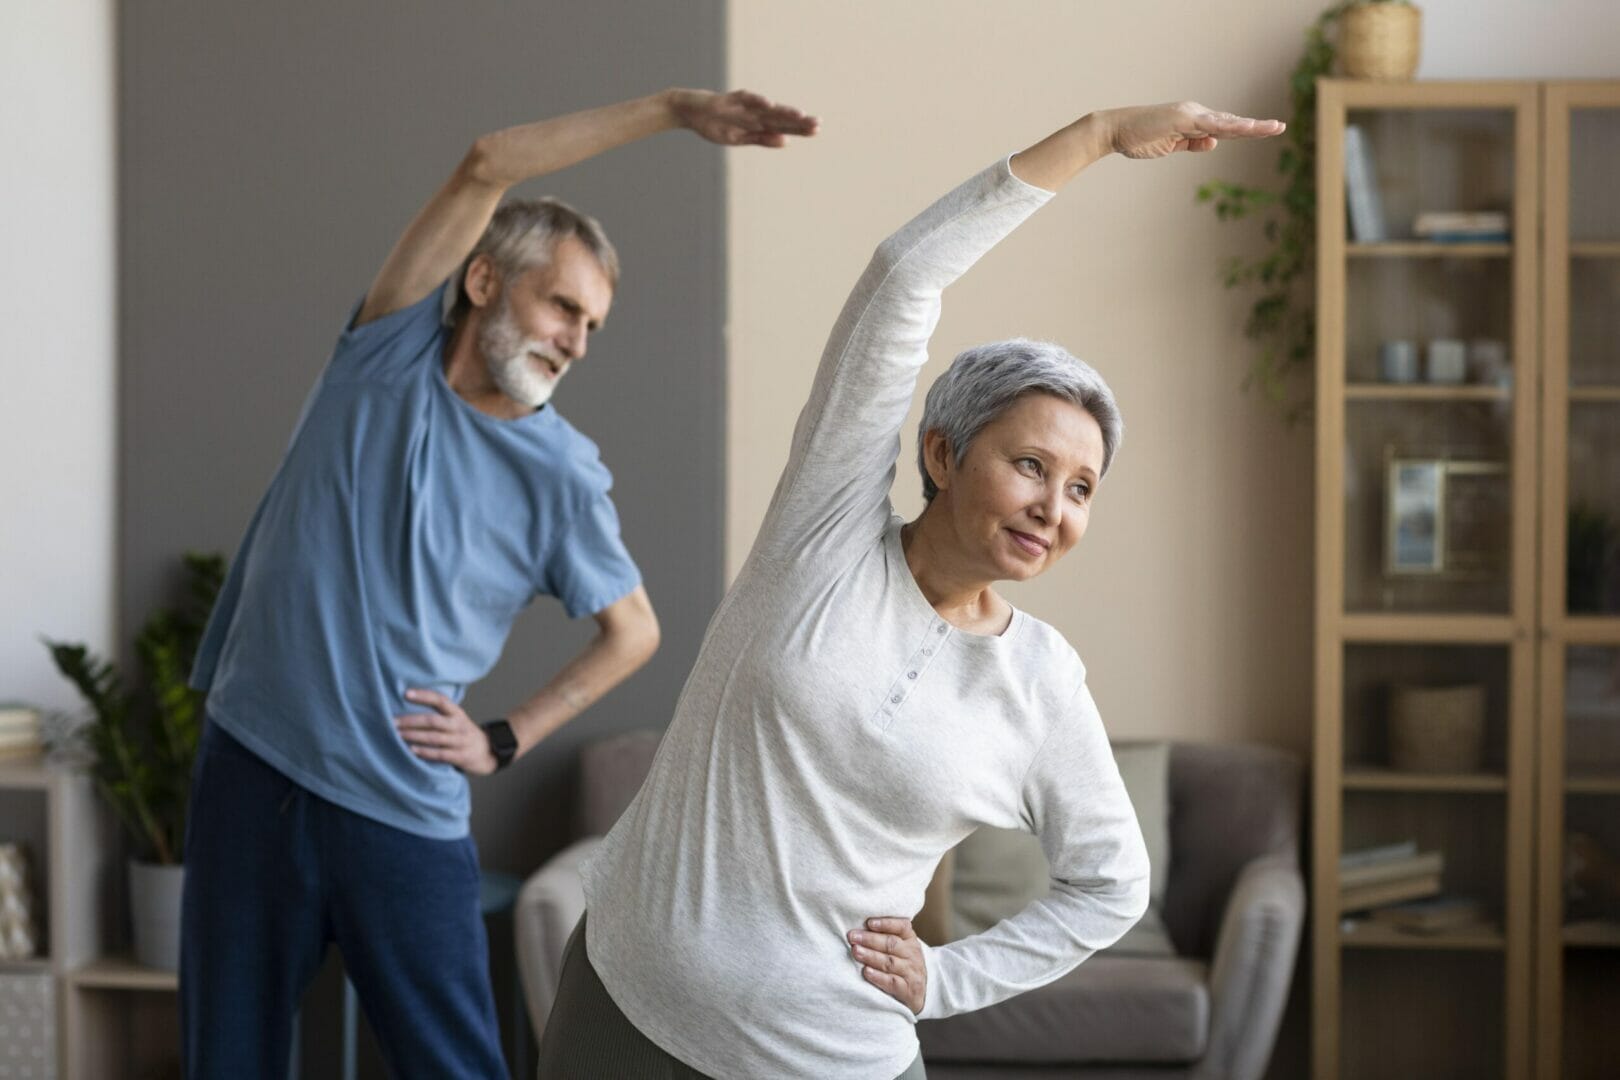 What Exercises Should Seniors Avoid?